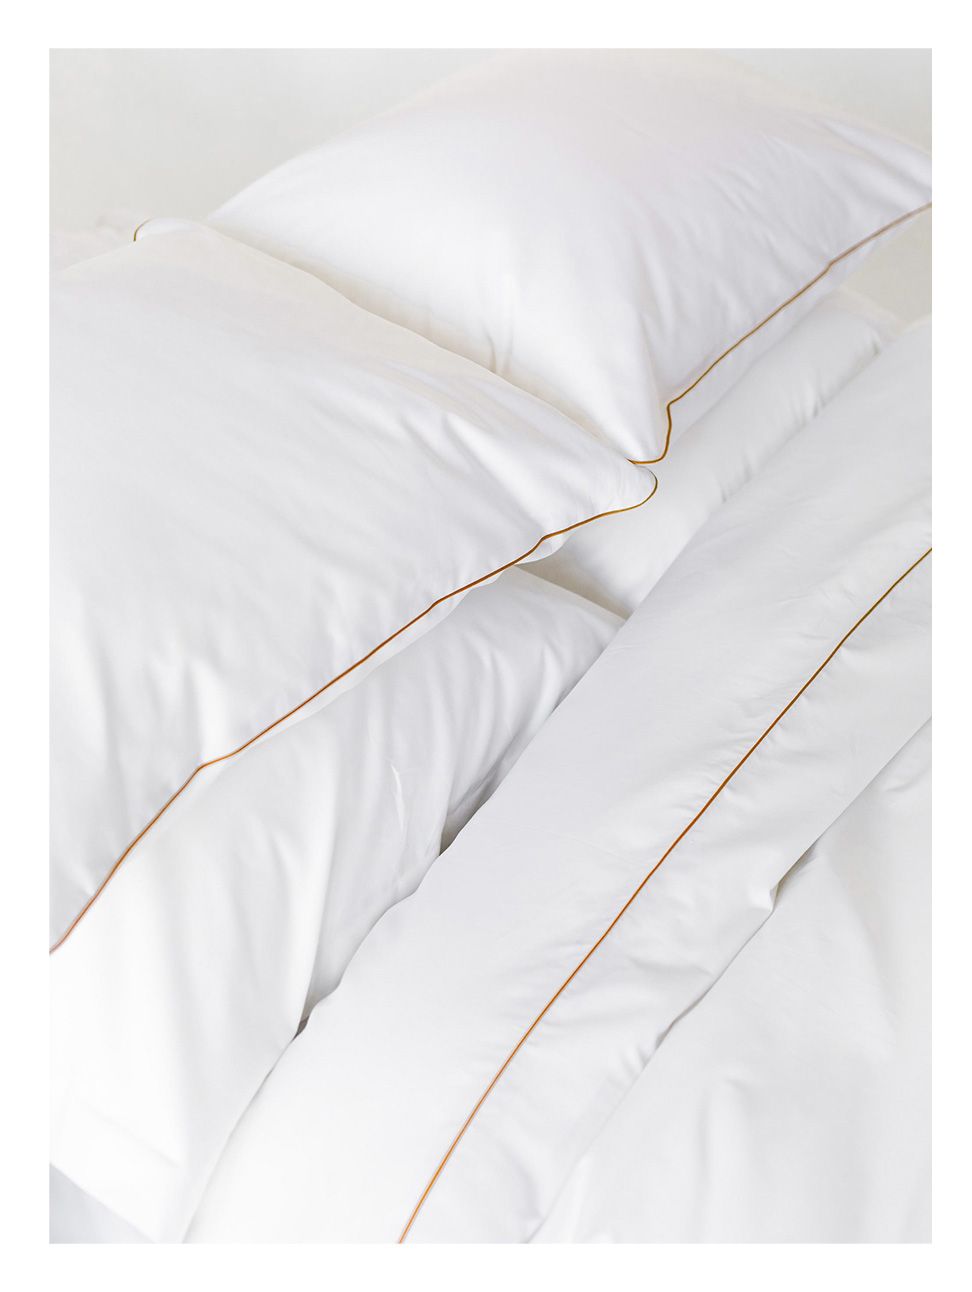 Комплект постельного белья Евро комплект Rim White&Gold